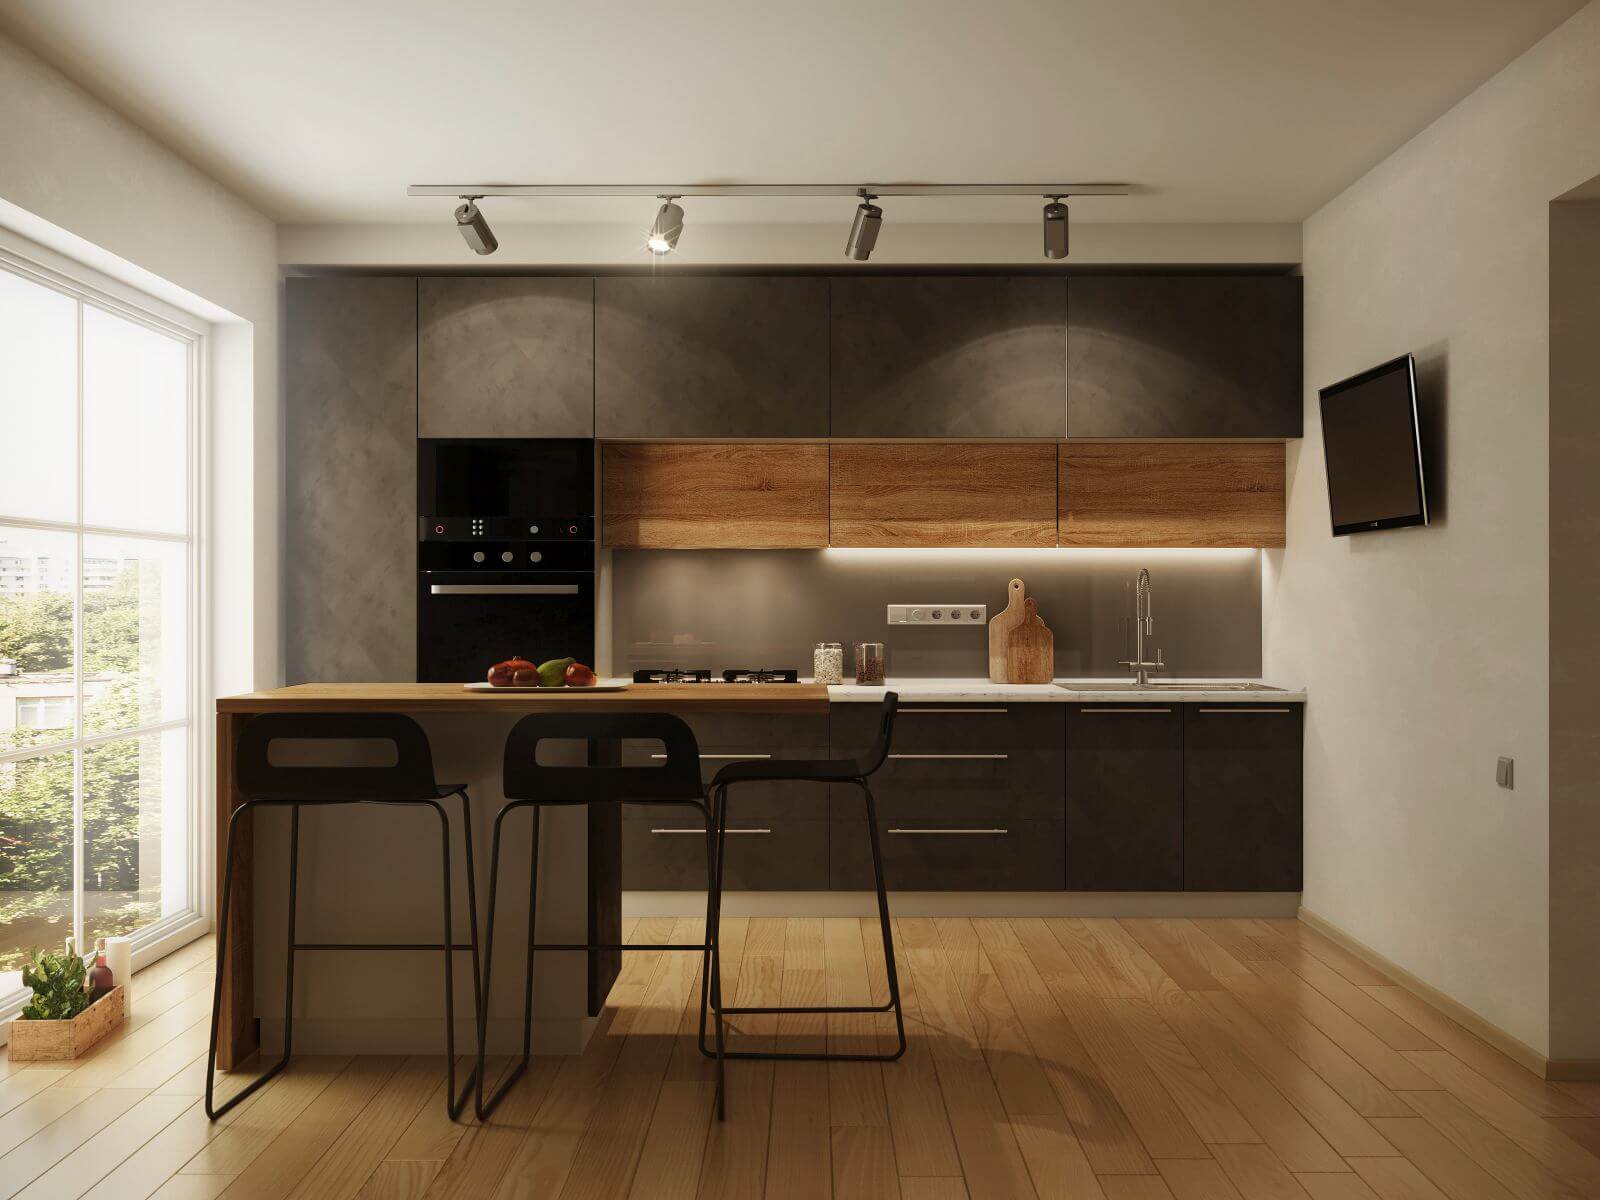 New modern kitchen interior